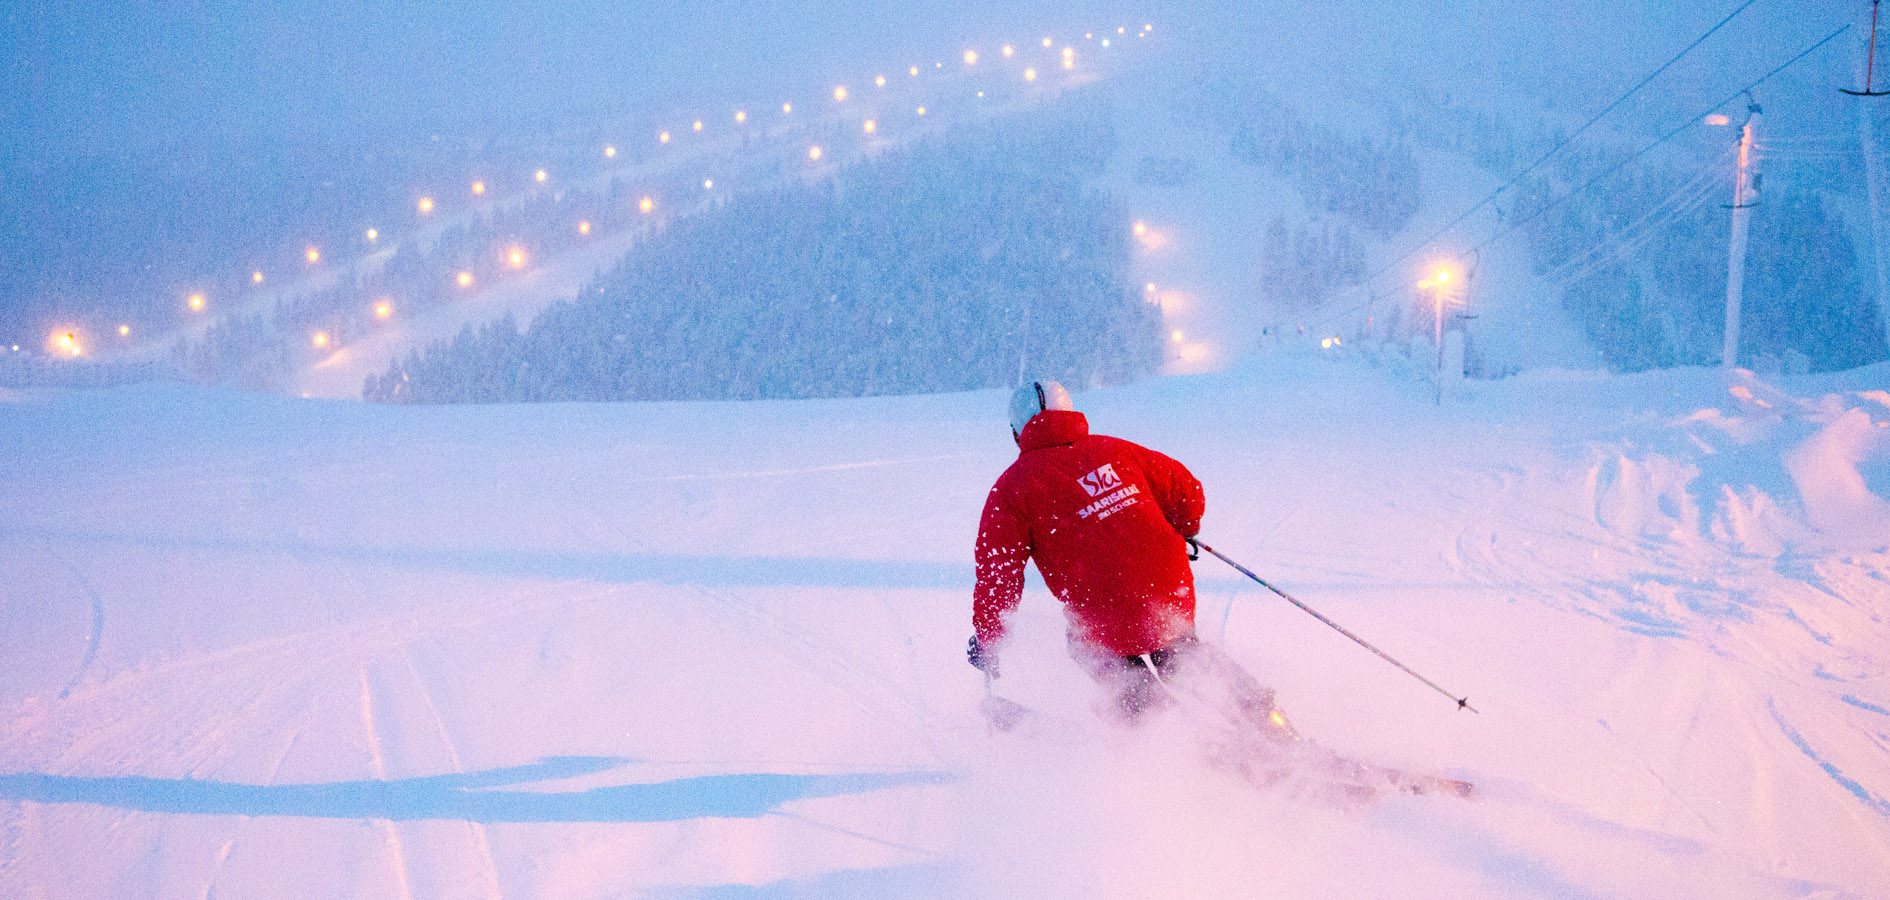 Der Großteil der finnischen Pisten ist beleuchtet, somit kann auch bei Dunkelheit Ski gefahren werden. Der abgebildete Skifahrer genießt eine Abendfahrt in Saariselkä.